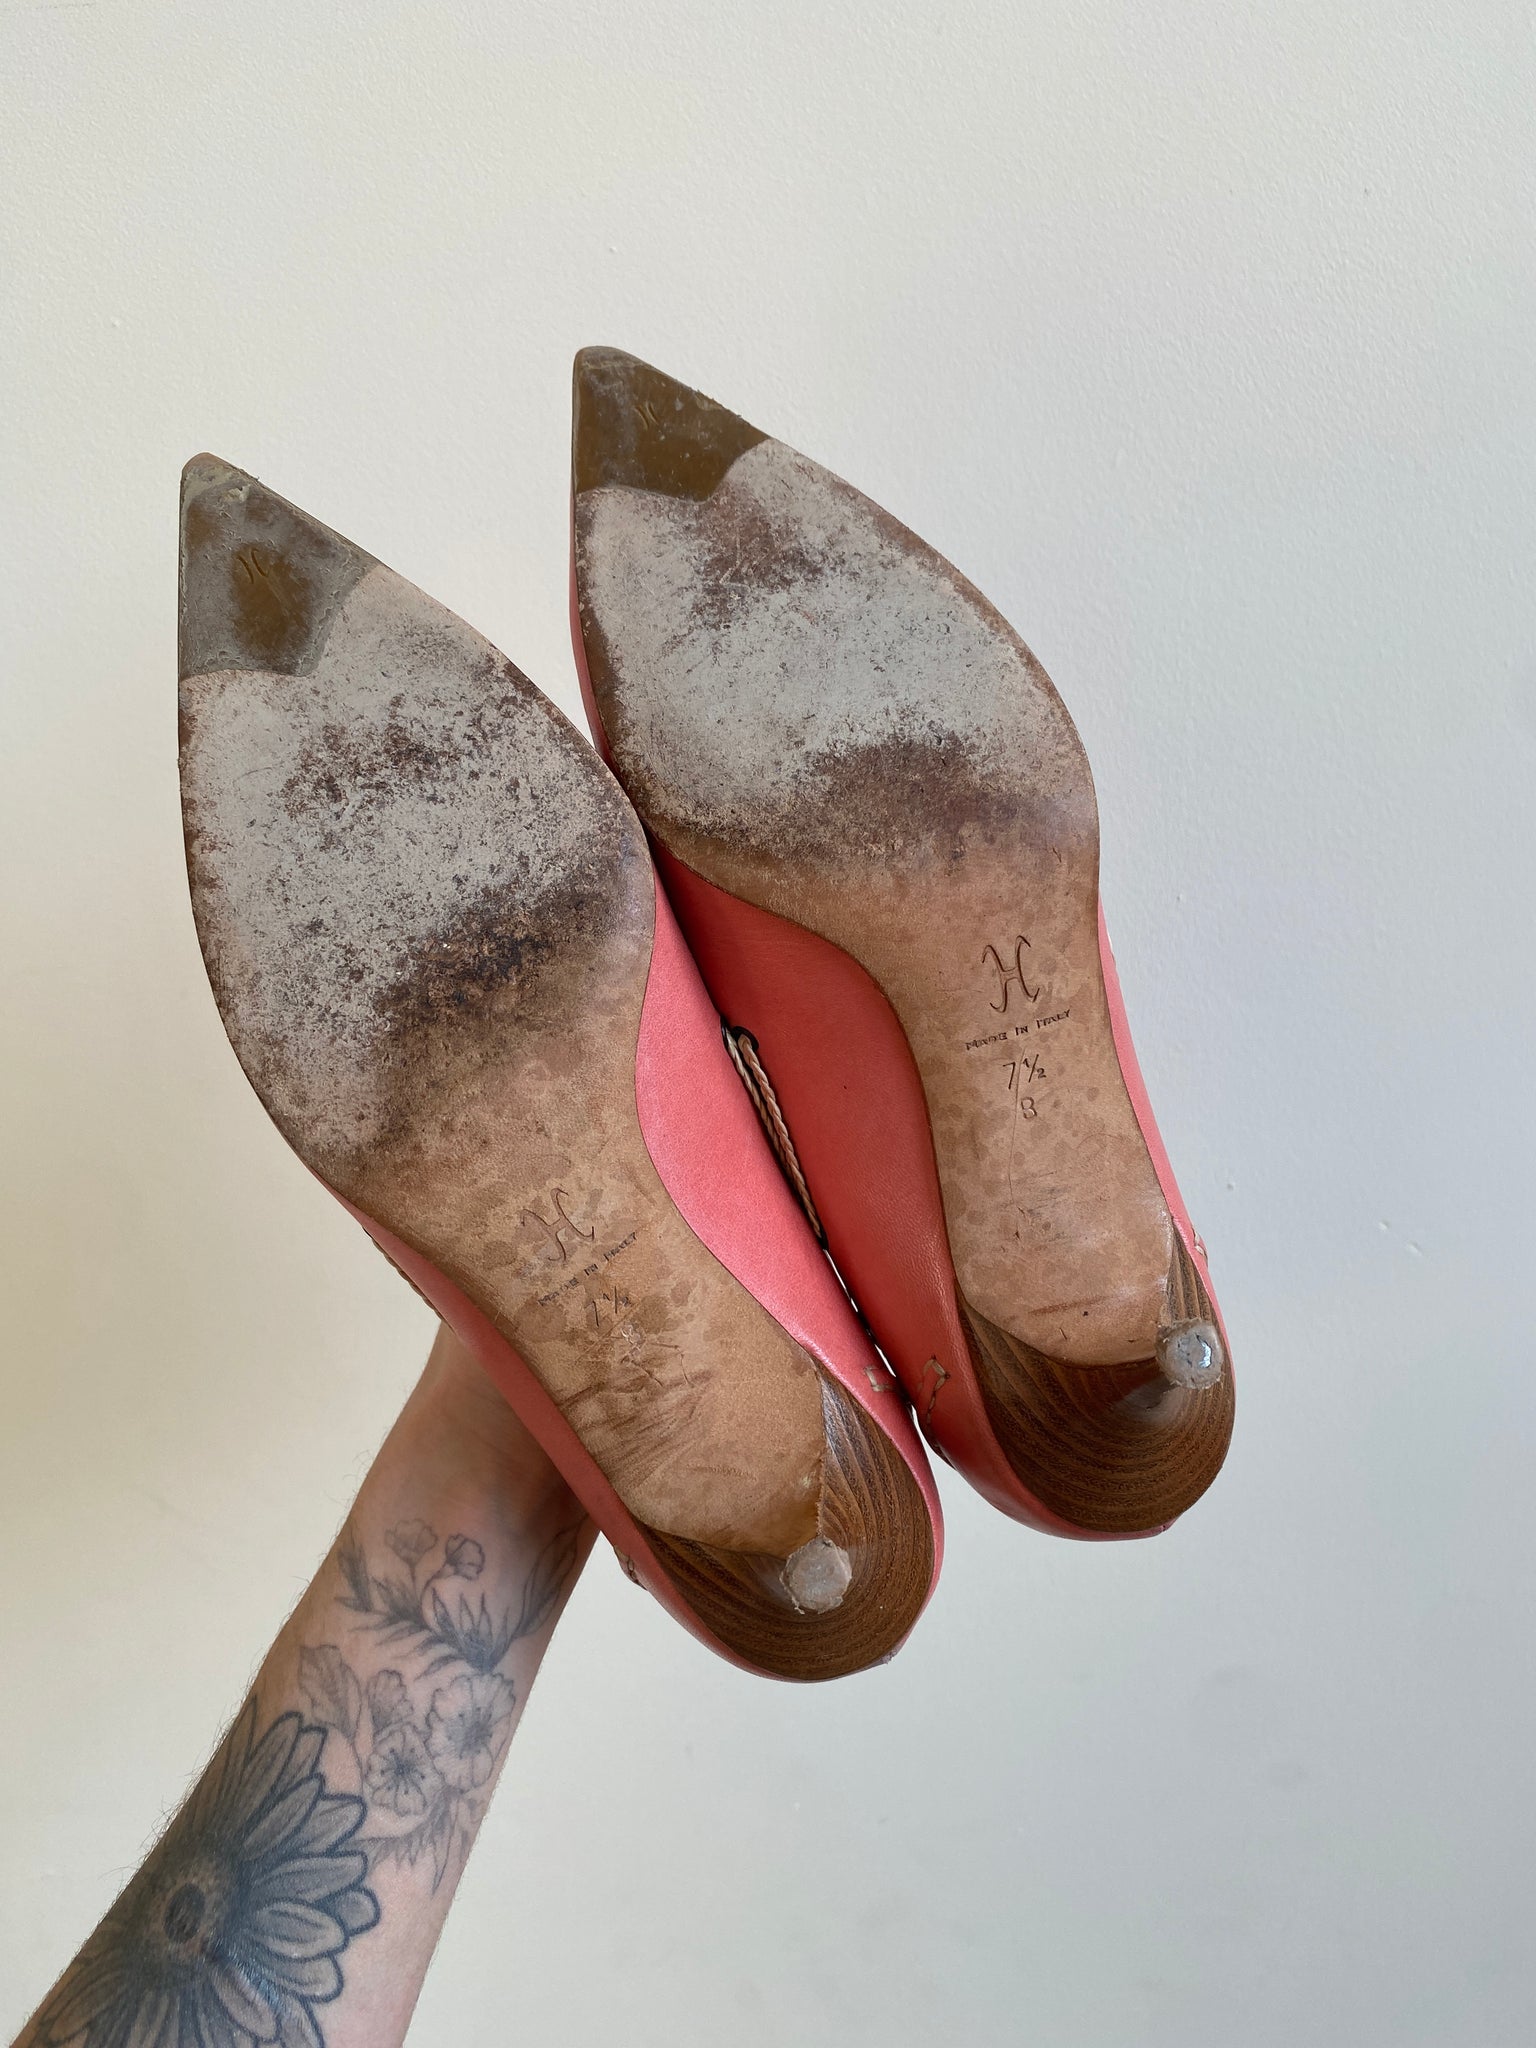 Pink Cole Haan Boat Shoe Heels (7.5)